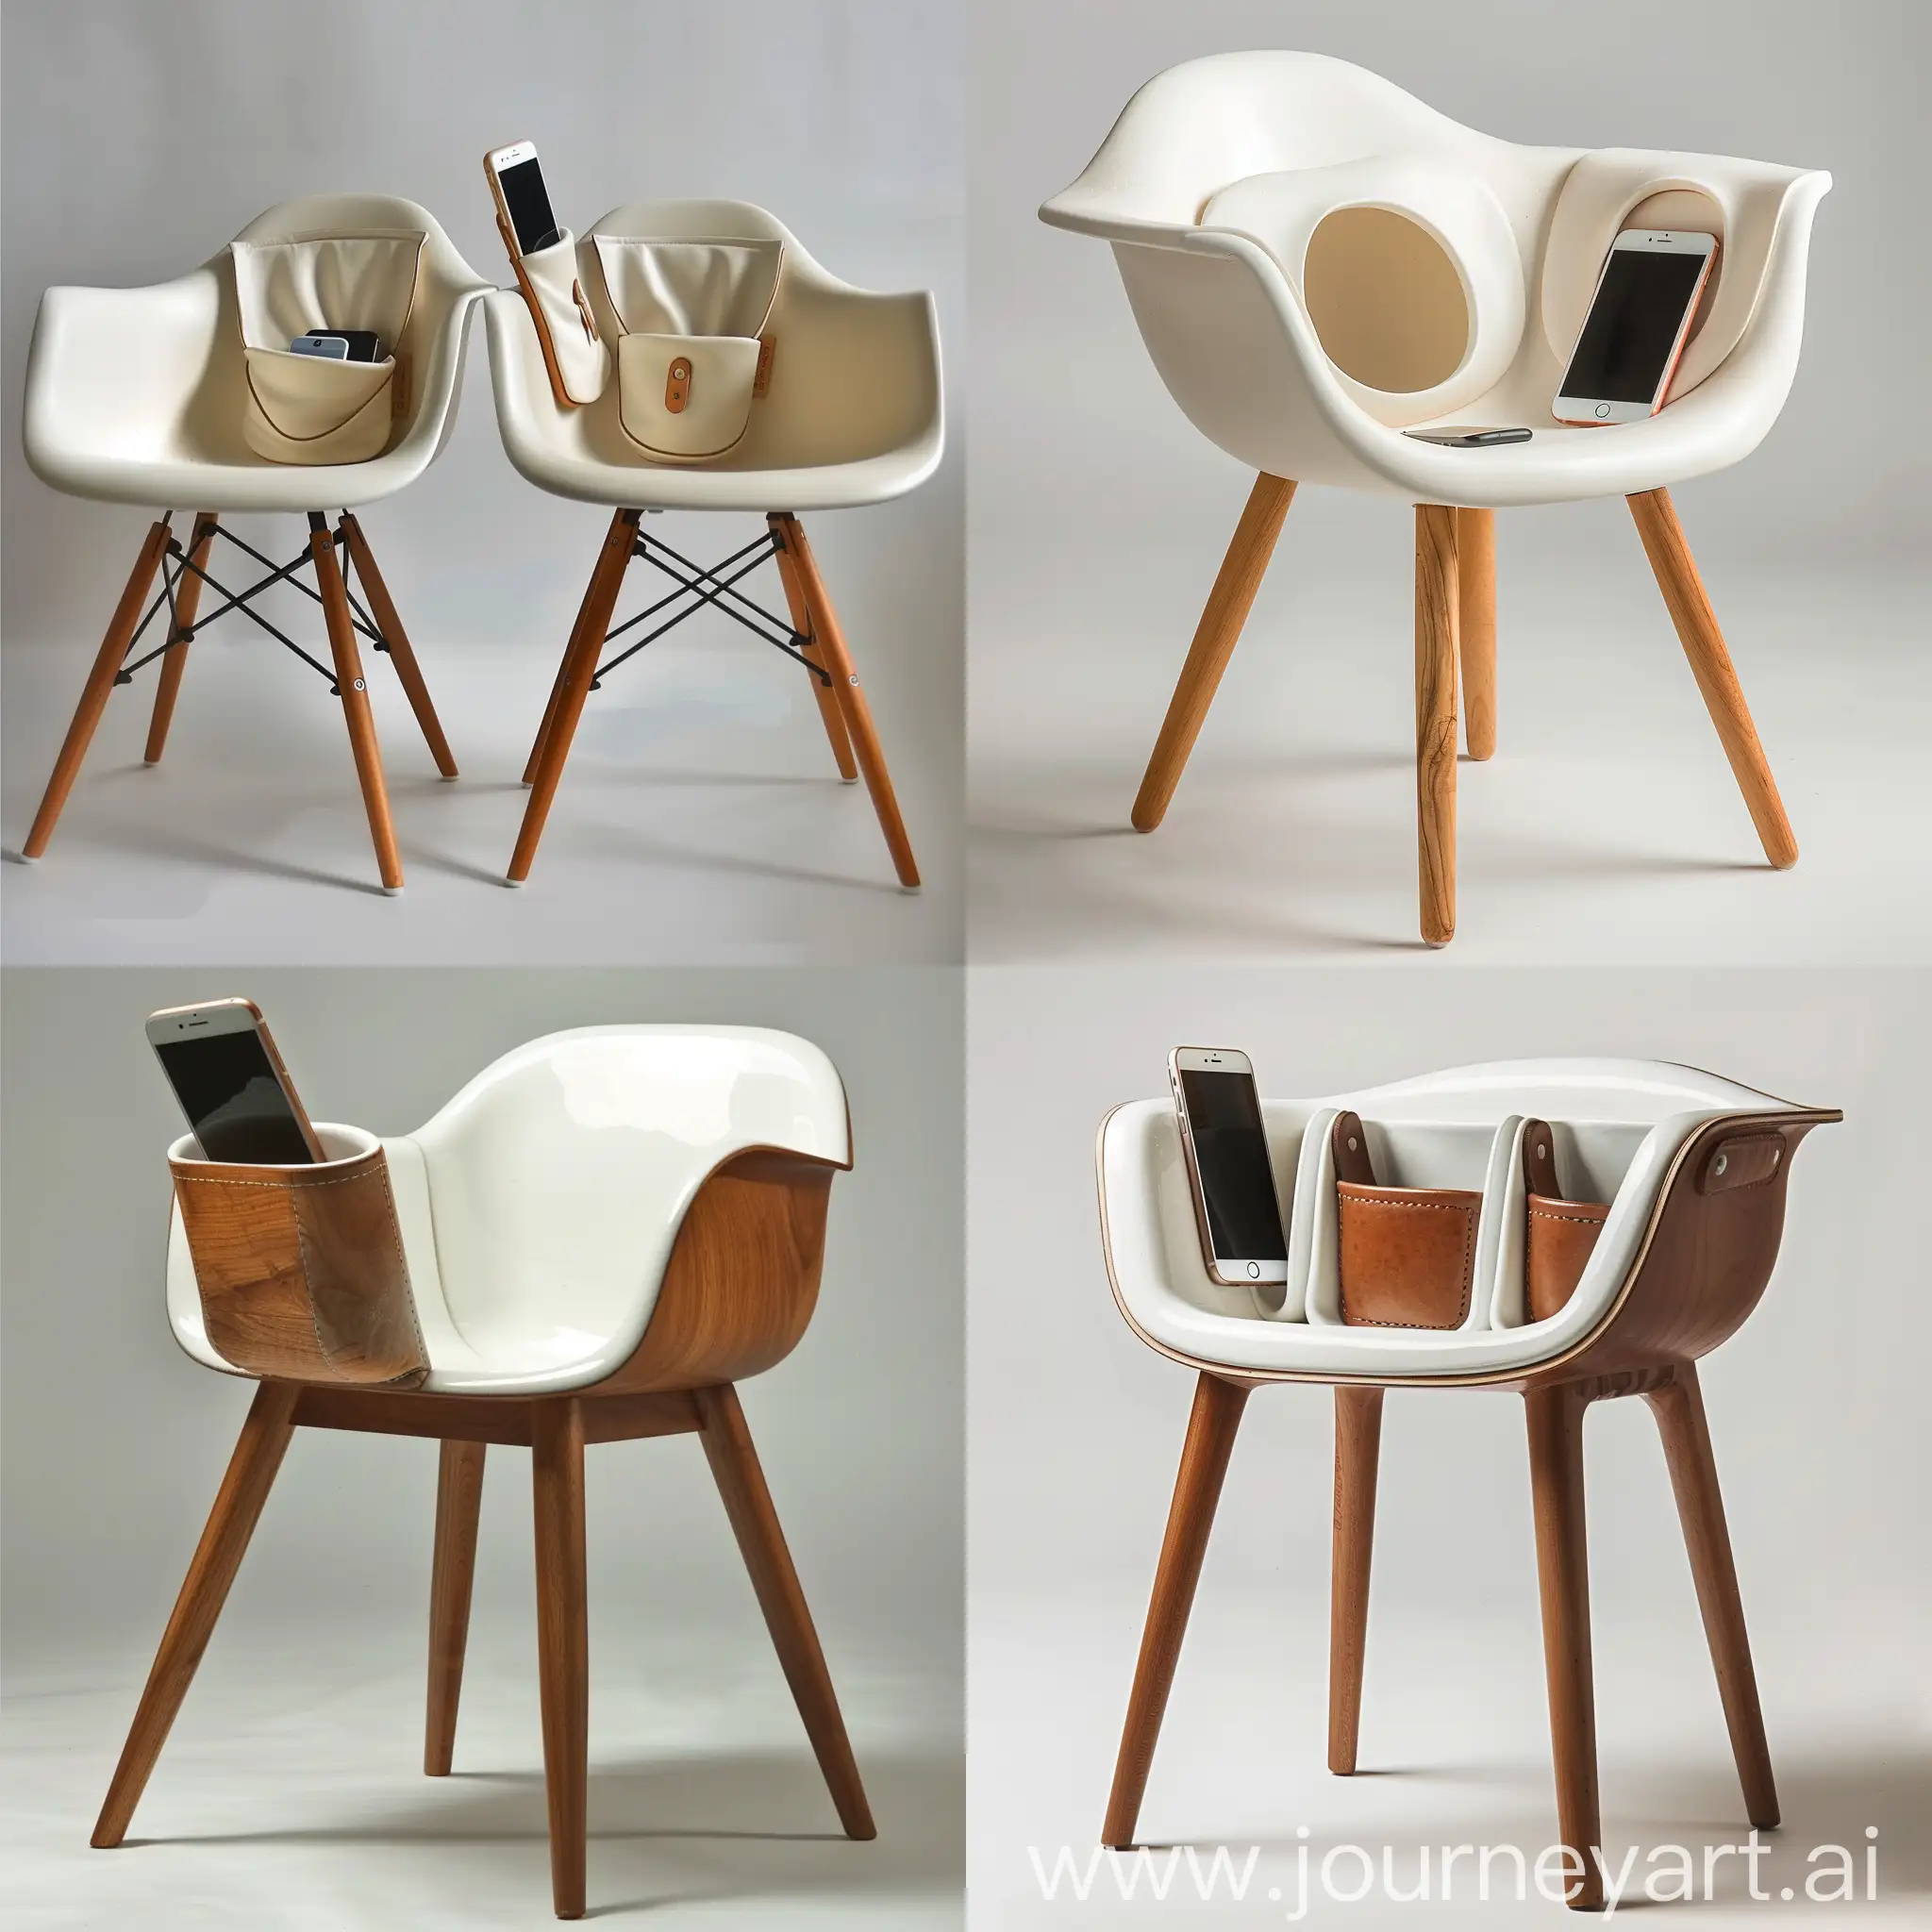 Минималистичный дизайн стульев ,стиль джапанди , скандинавский стиль , тонкие ножки , дерево , в стул встроены керамические кармашки для телефона 